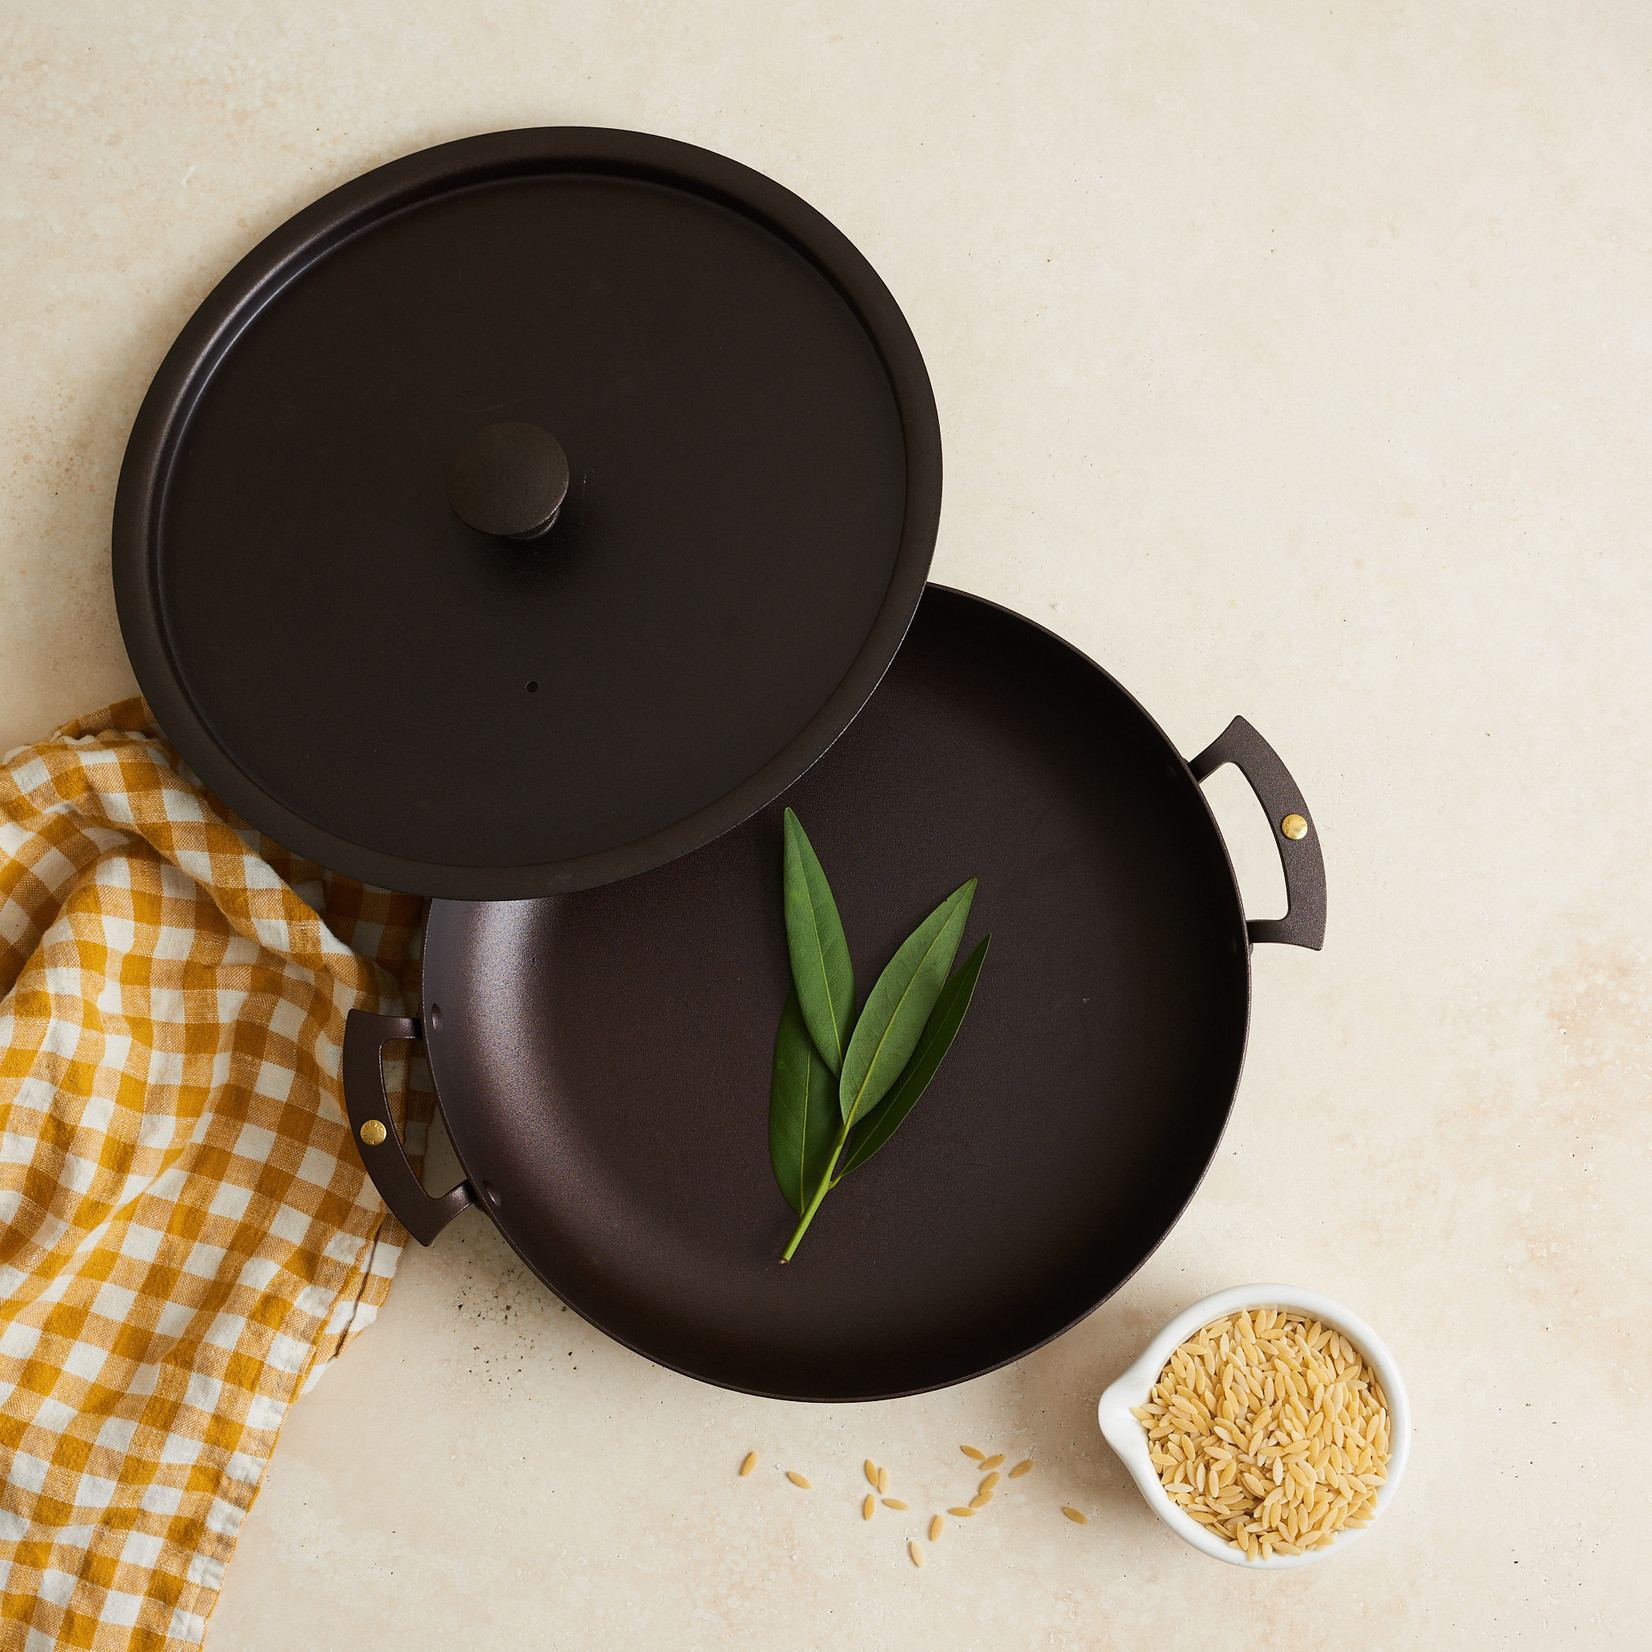 Spun Iron Chef Pan with lid